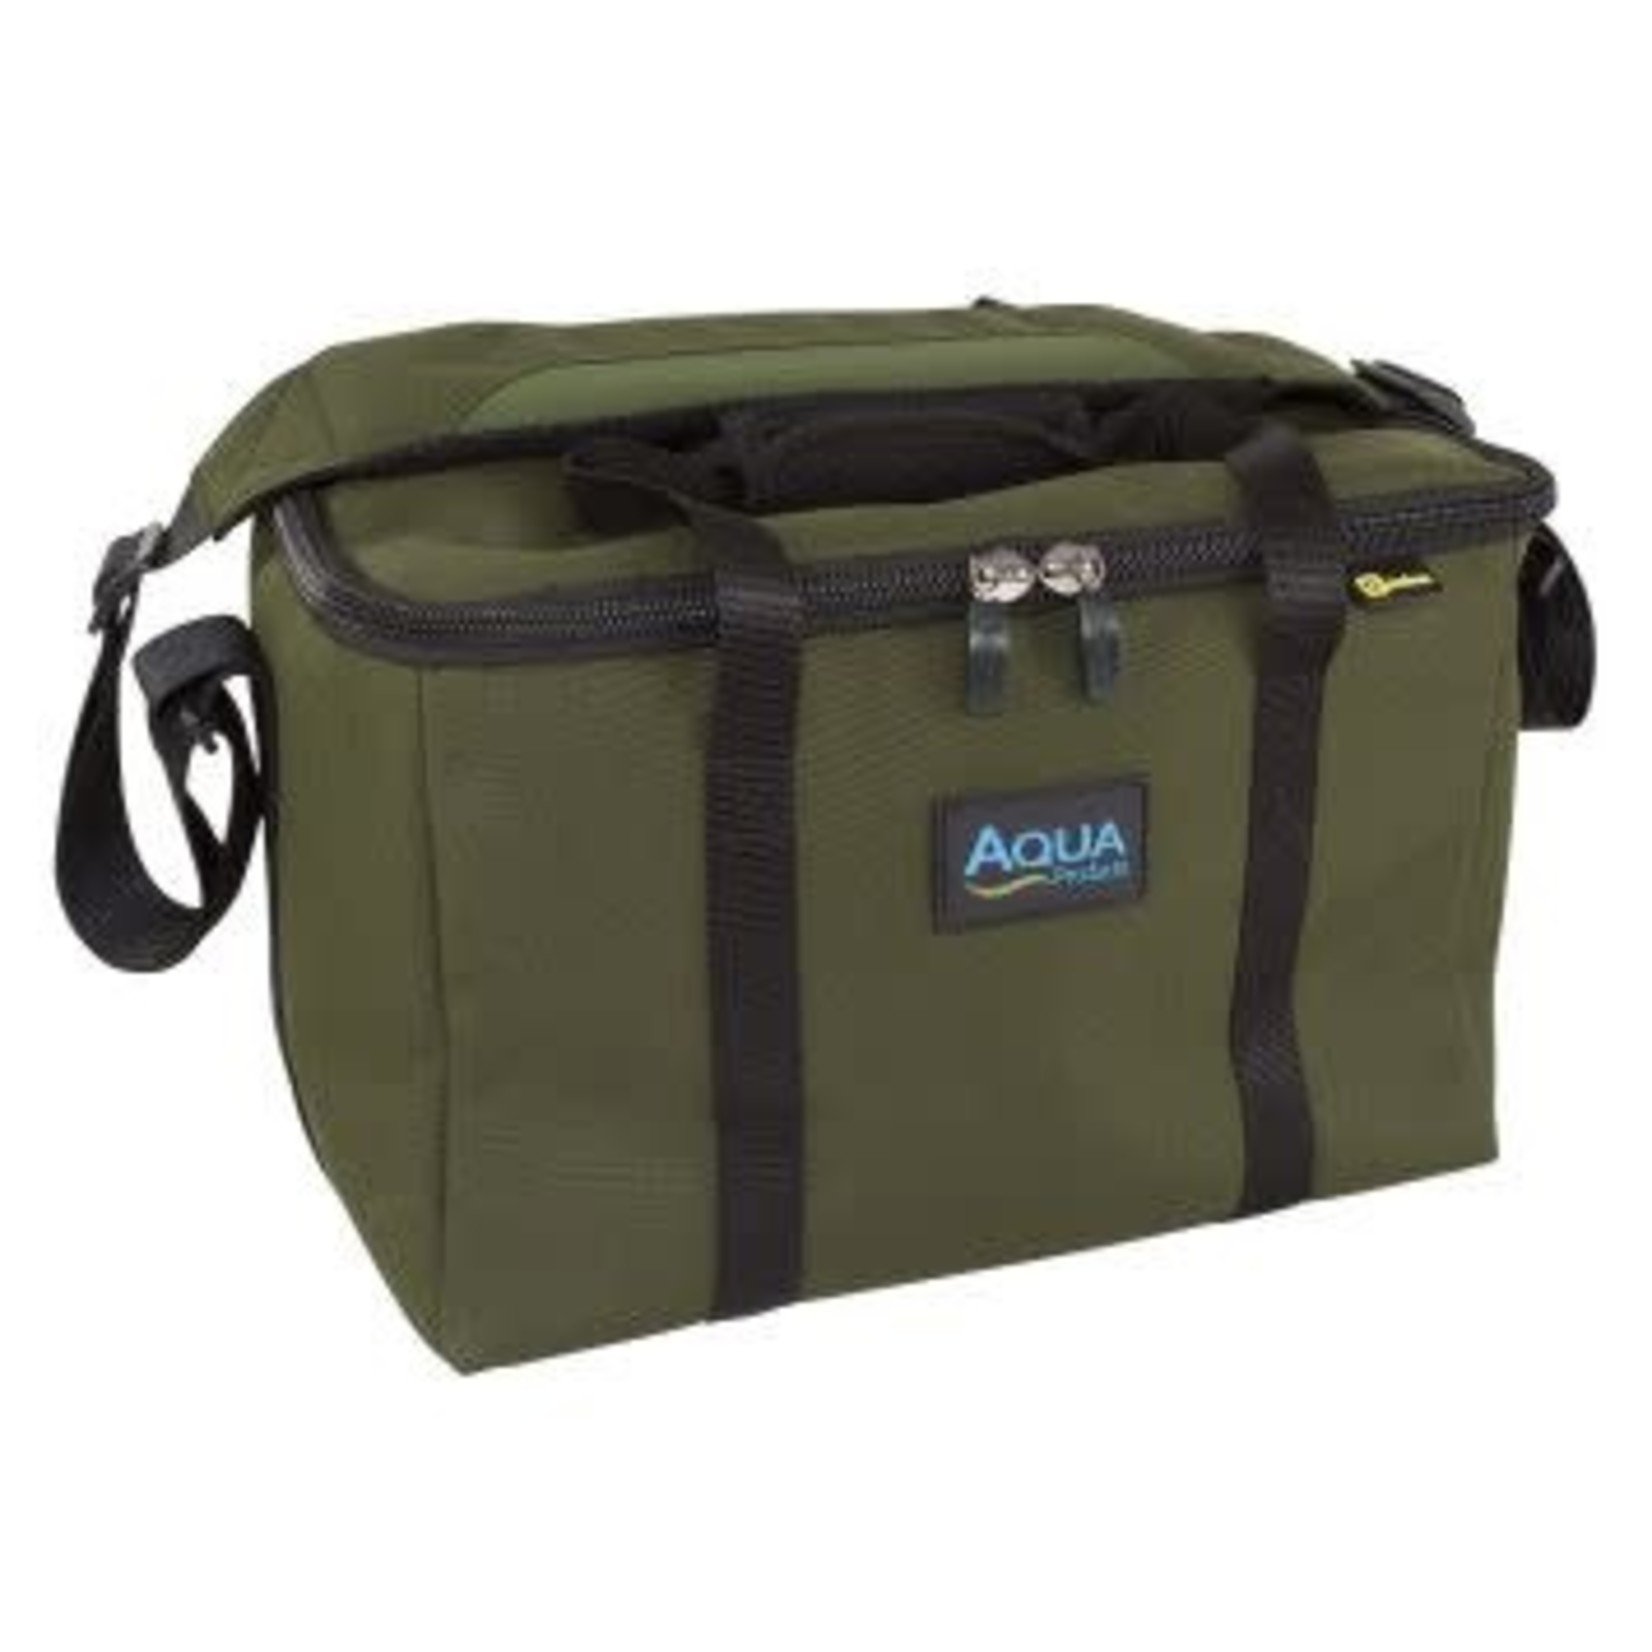 AQUA Aqua Cookware Bag Black Series